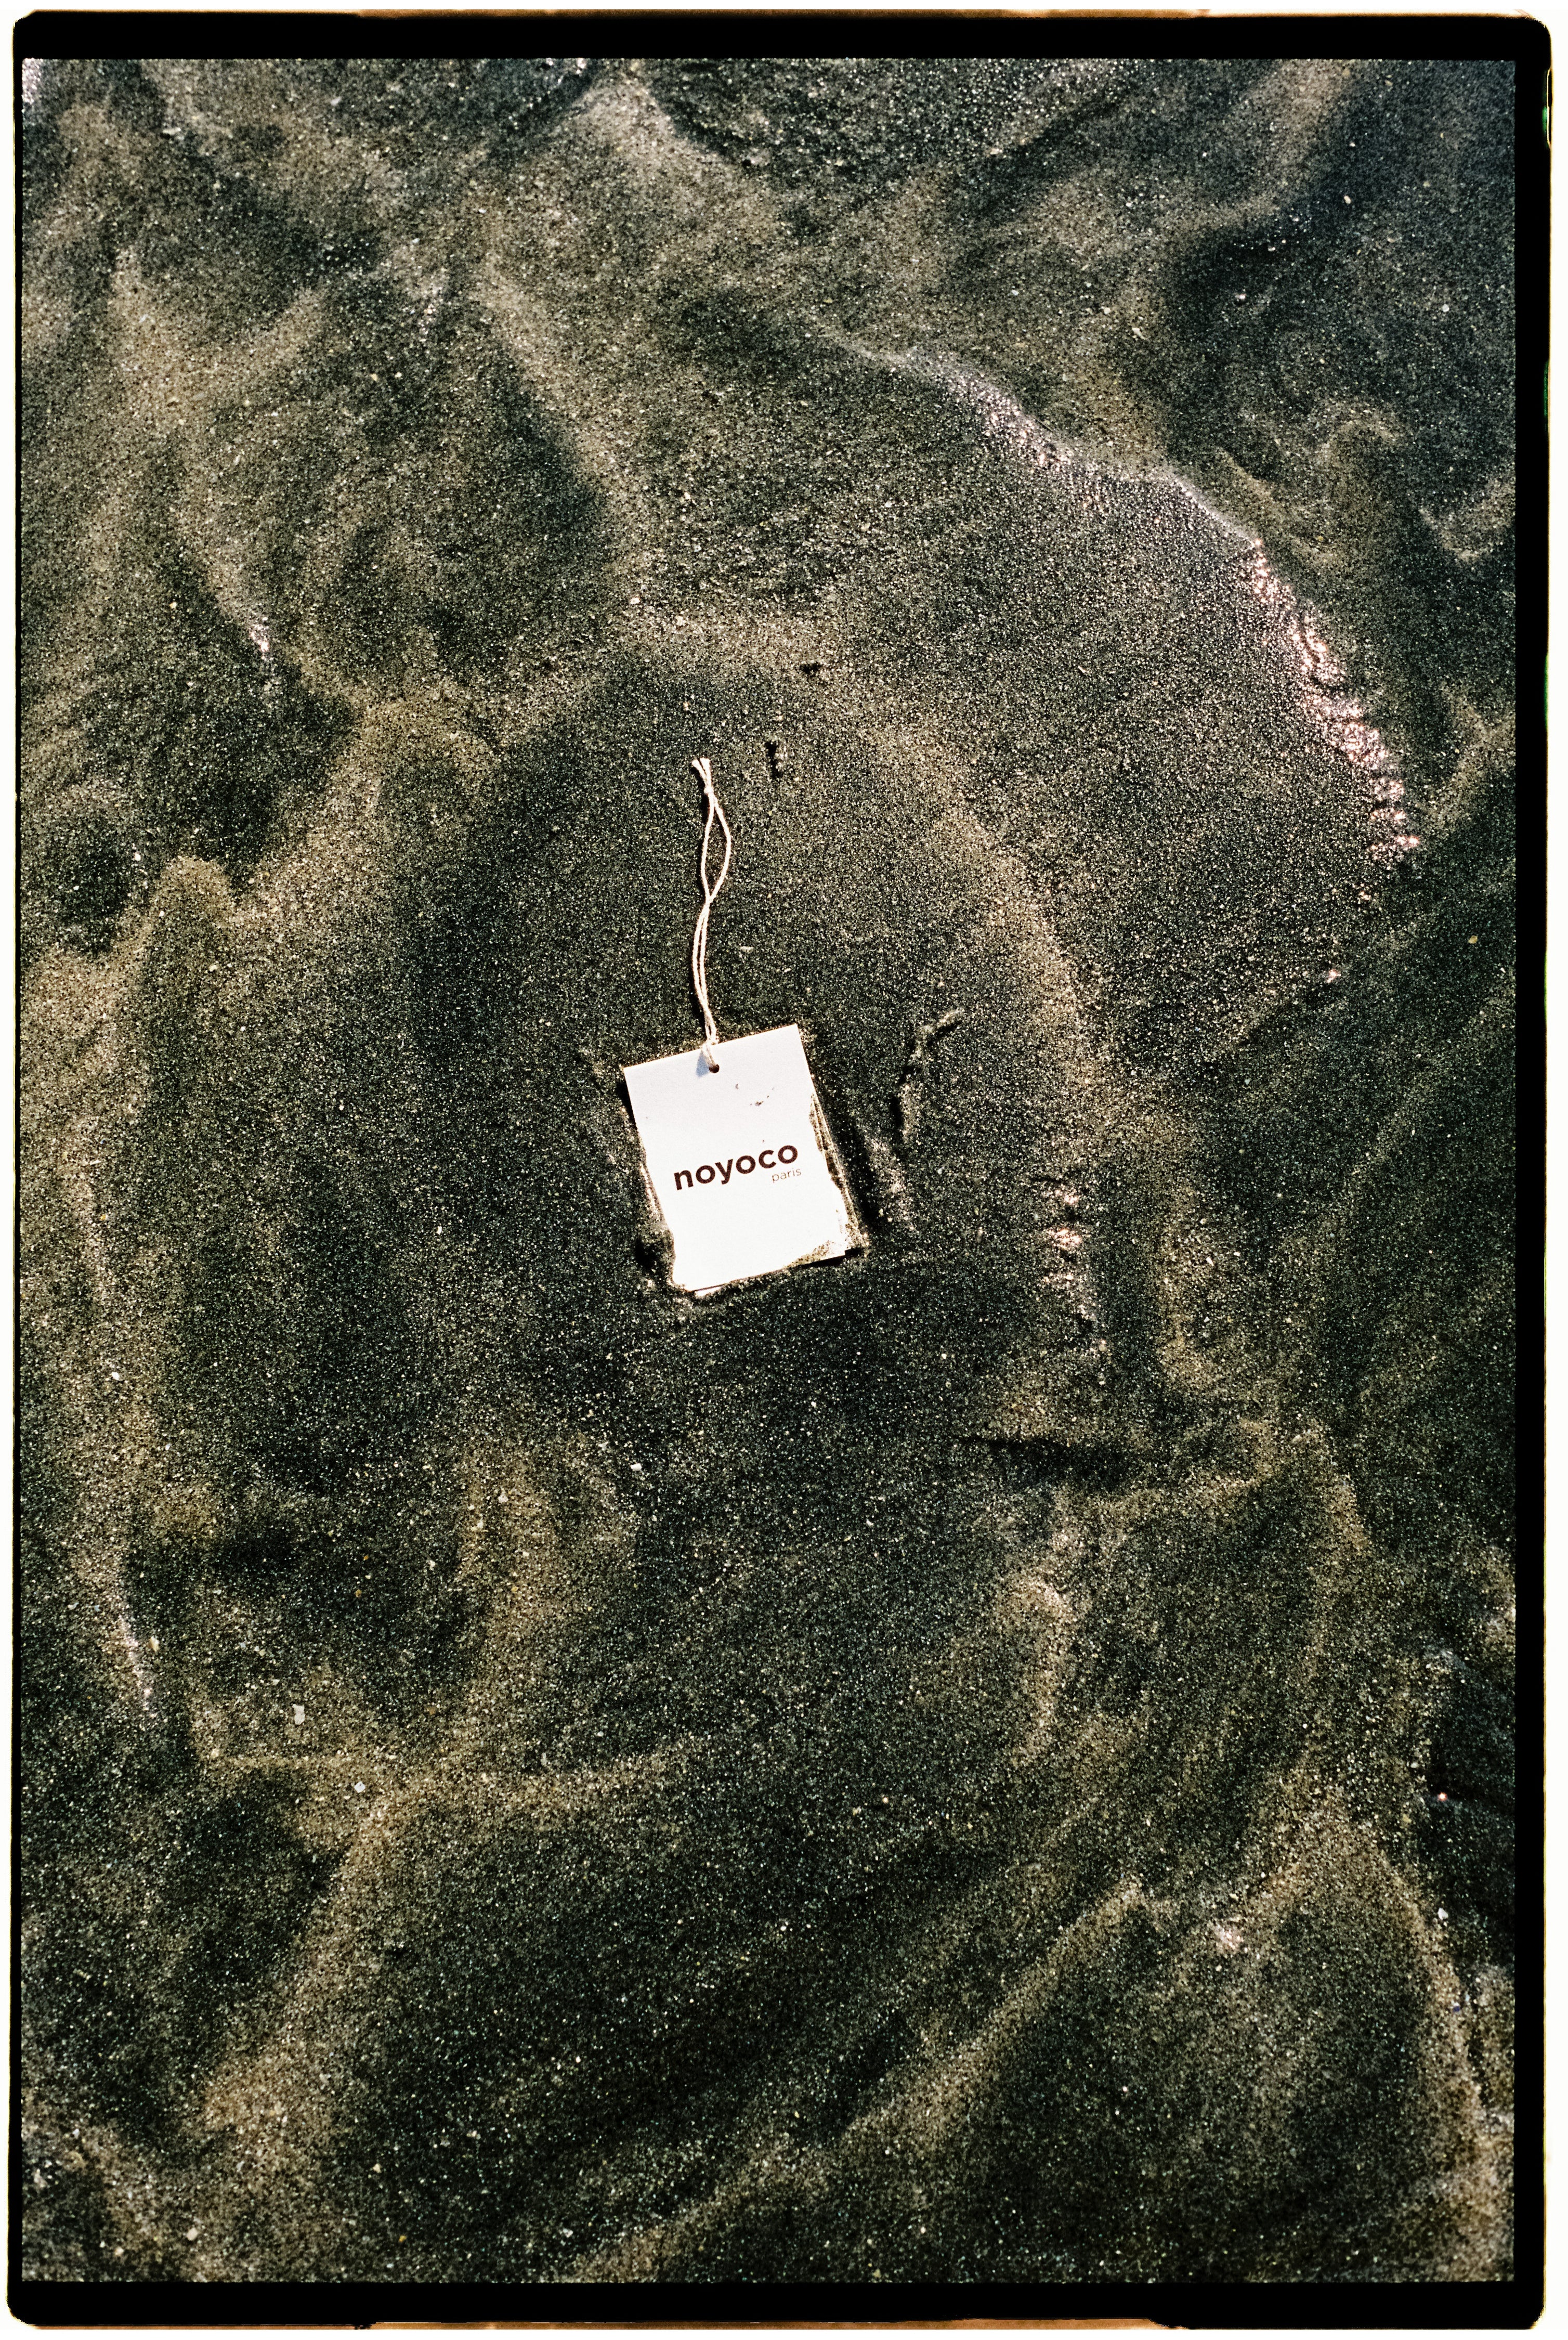 étiquette de vêtement noyoco dans le sable et l'eau d'une place en Normandie